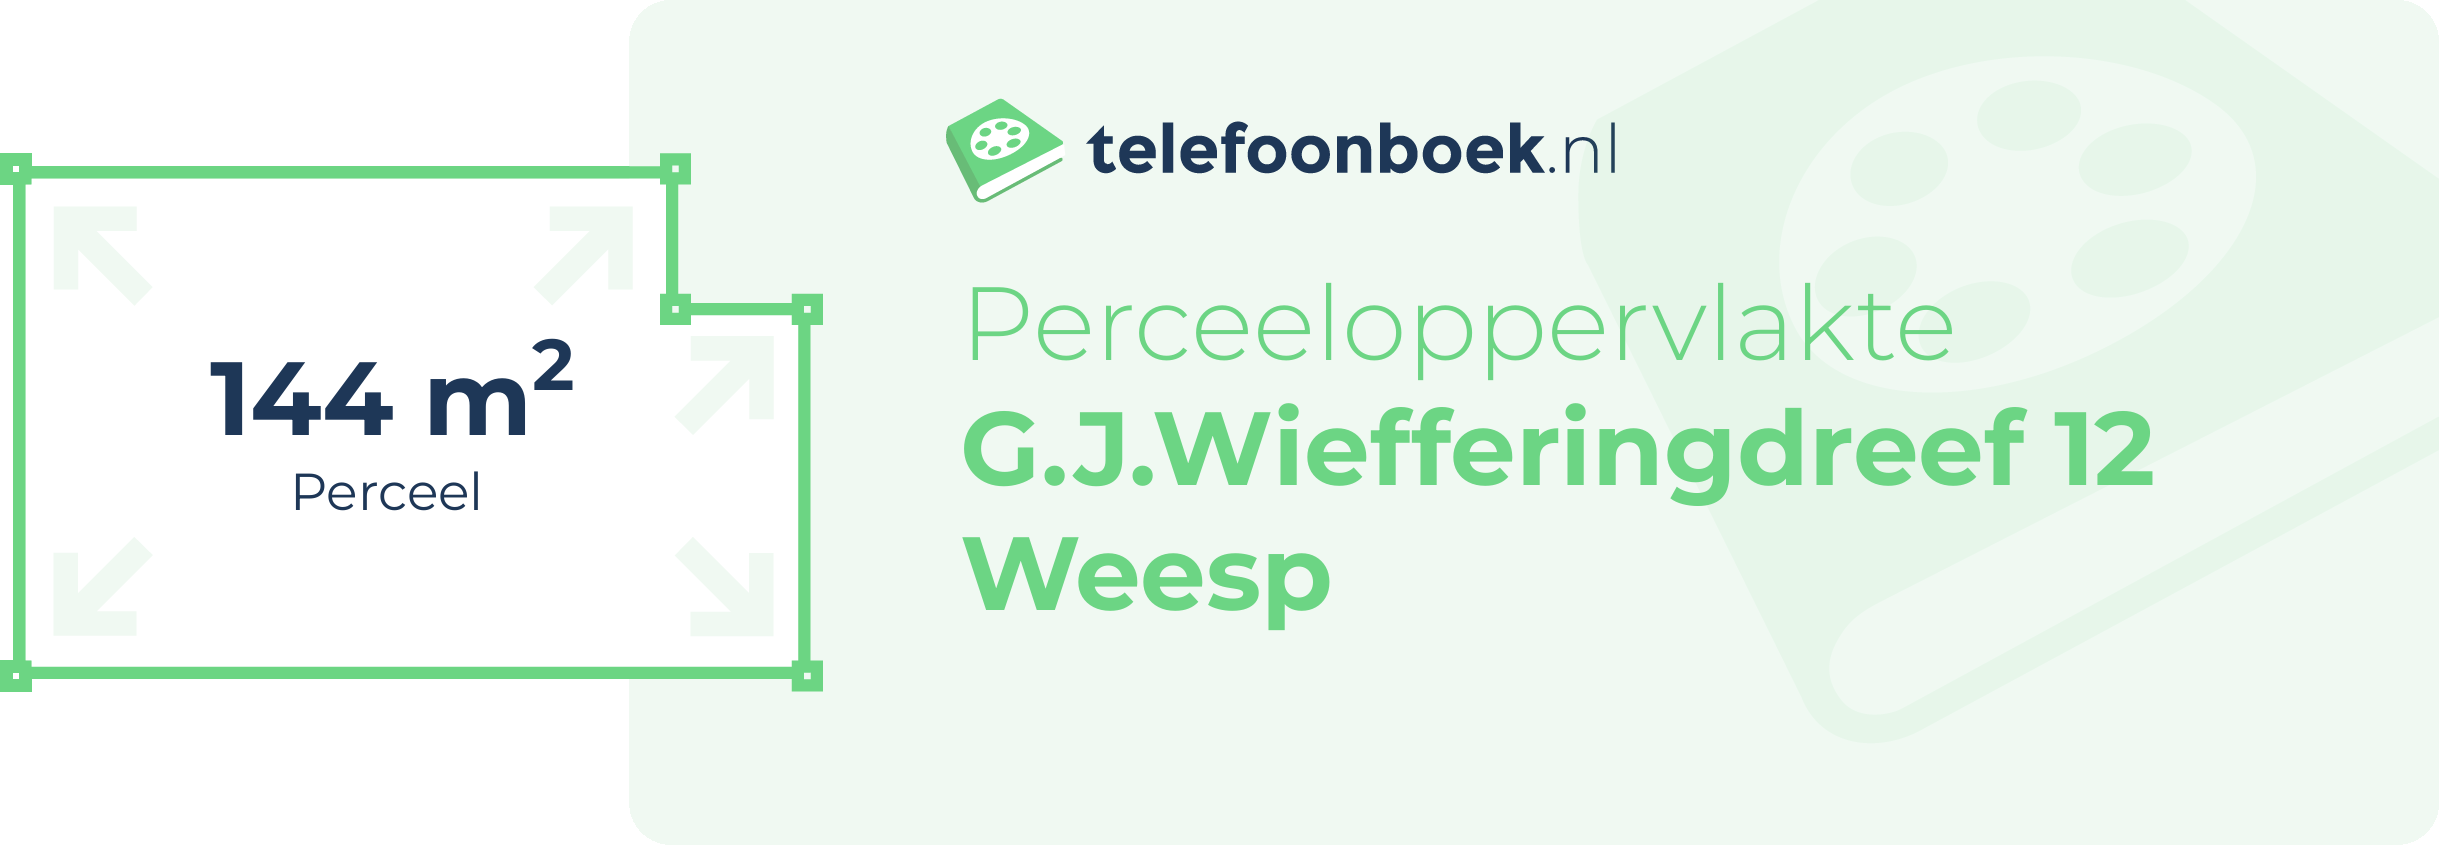 Perceeloppervlakte G.J.Wiefferingdreef 12 Weesp